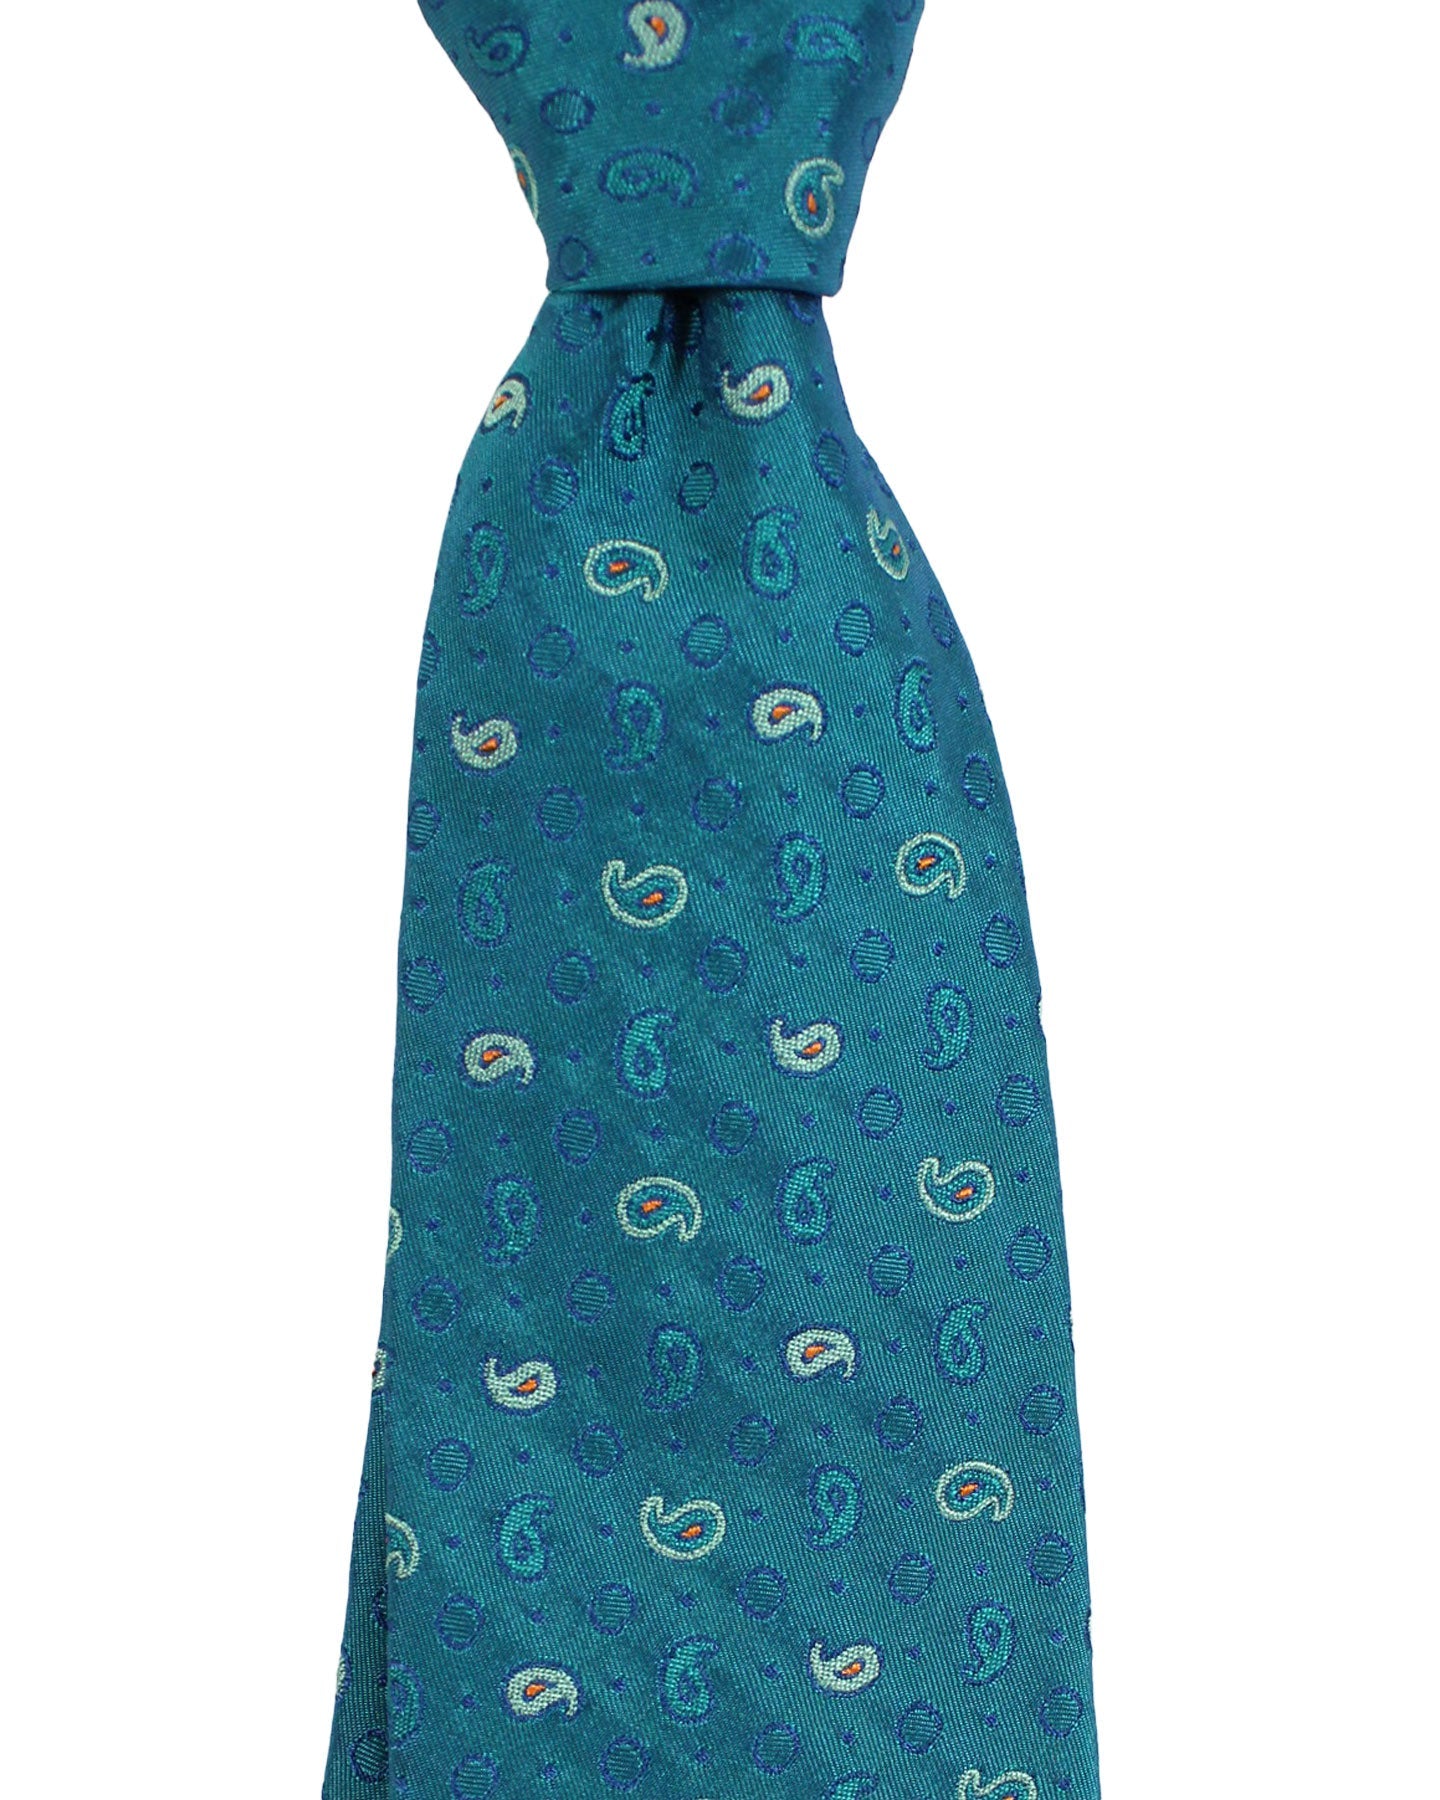 Sartorio Napoli Silk Tie Aqua Paisley Design